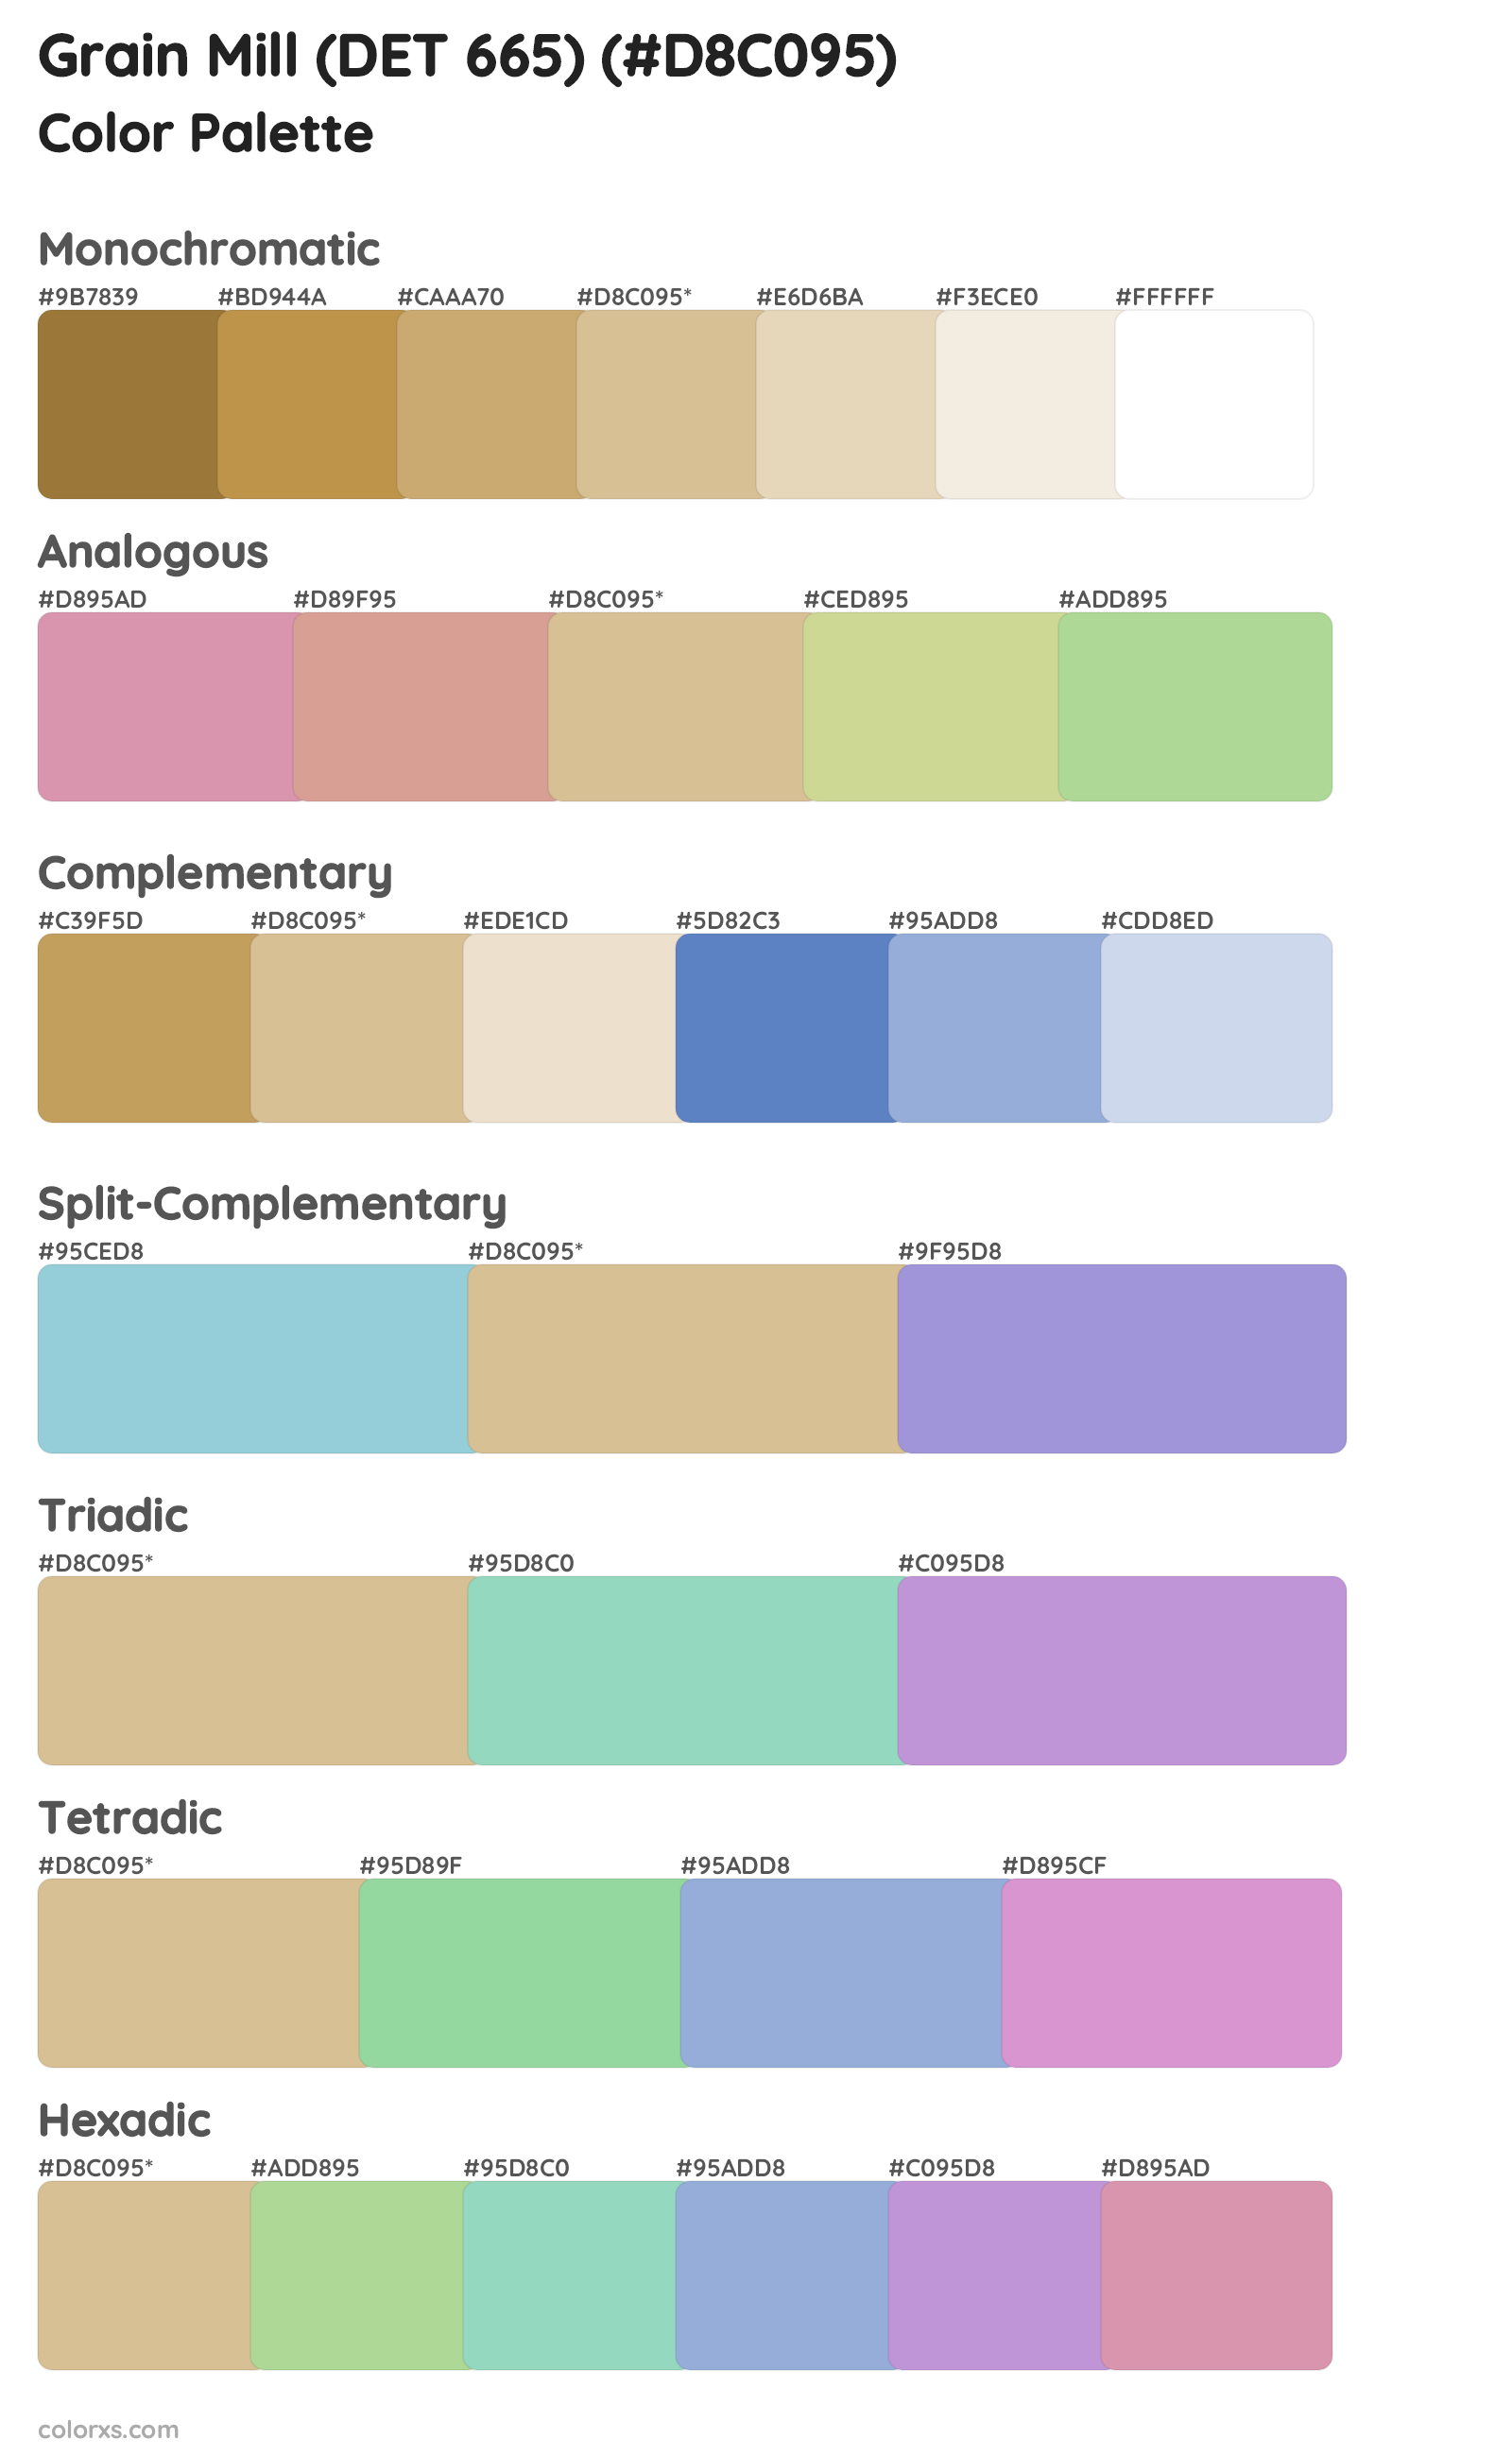 Grain Mill (DET 665) Color Scheme Palettes